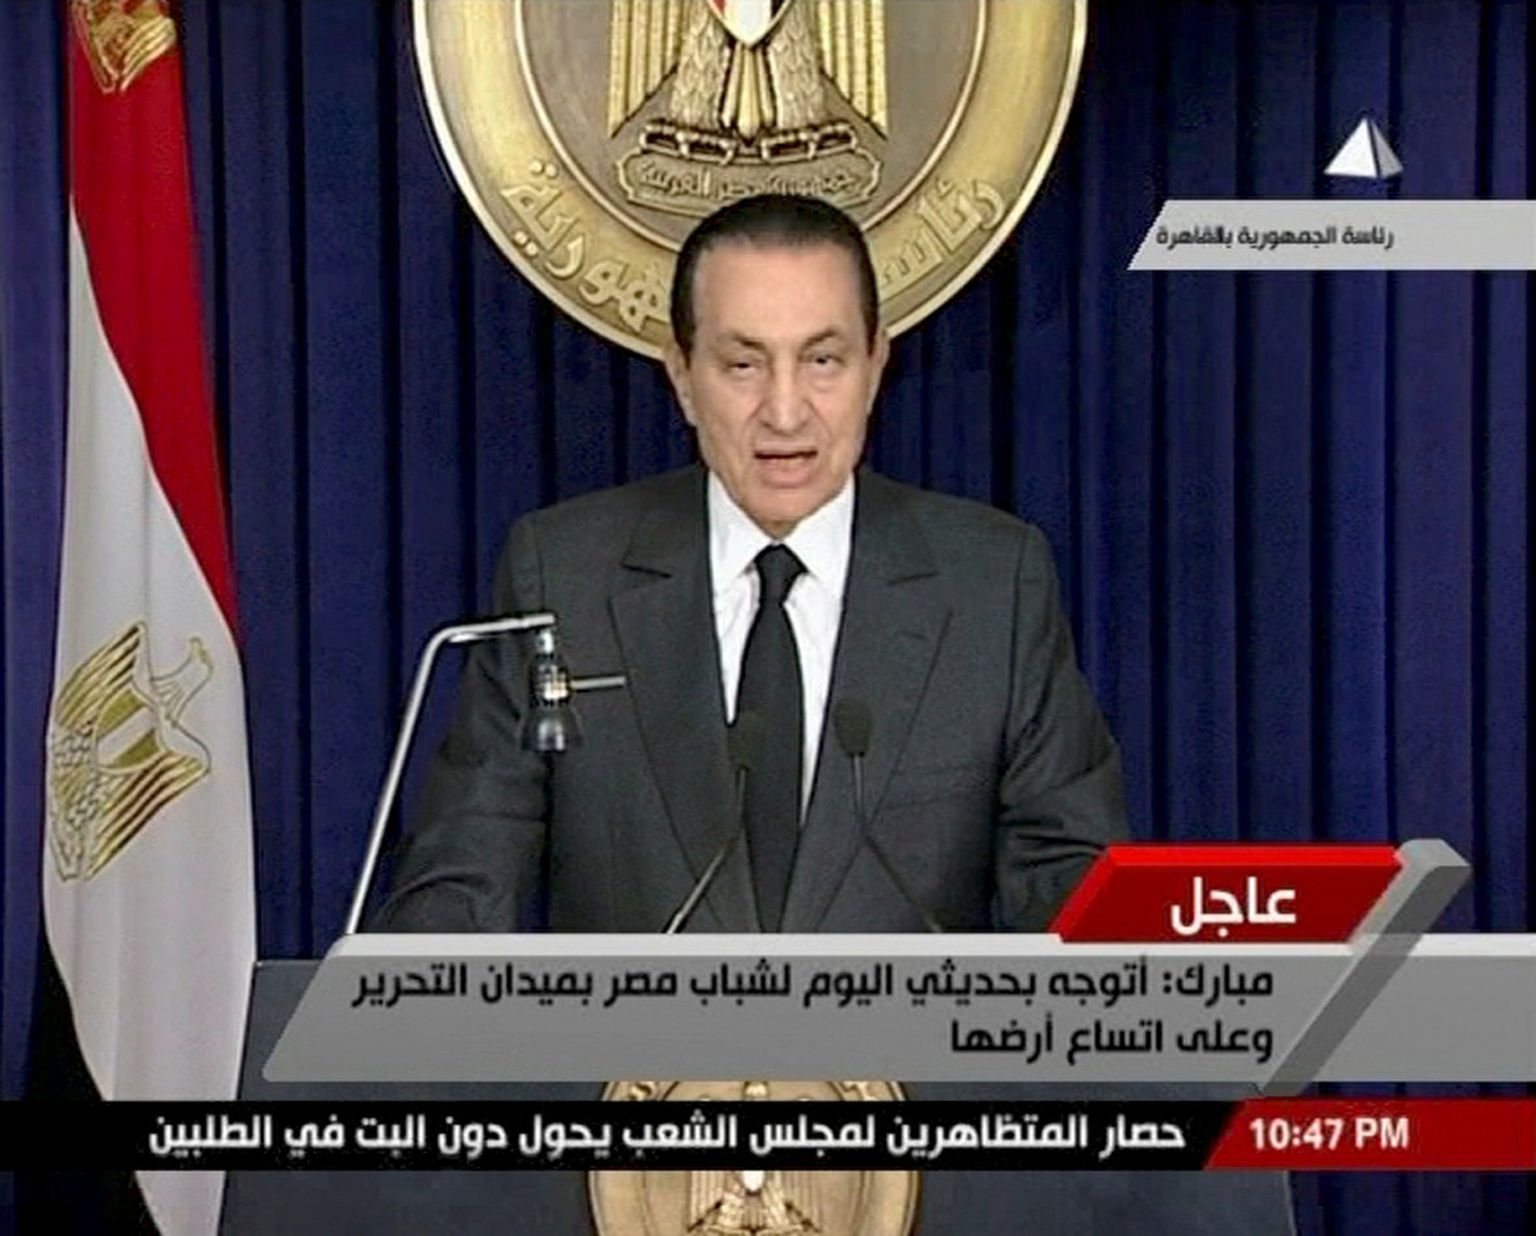 Egiptuse president Hosni Mubarak pöördumas televisioonis 10. veebruaril 2011 rahva poole